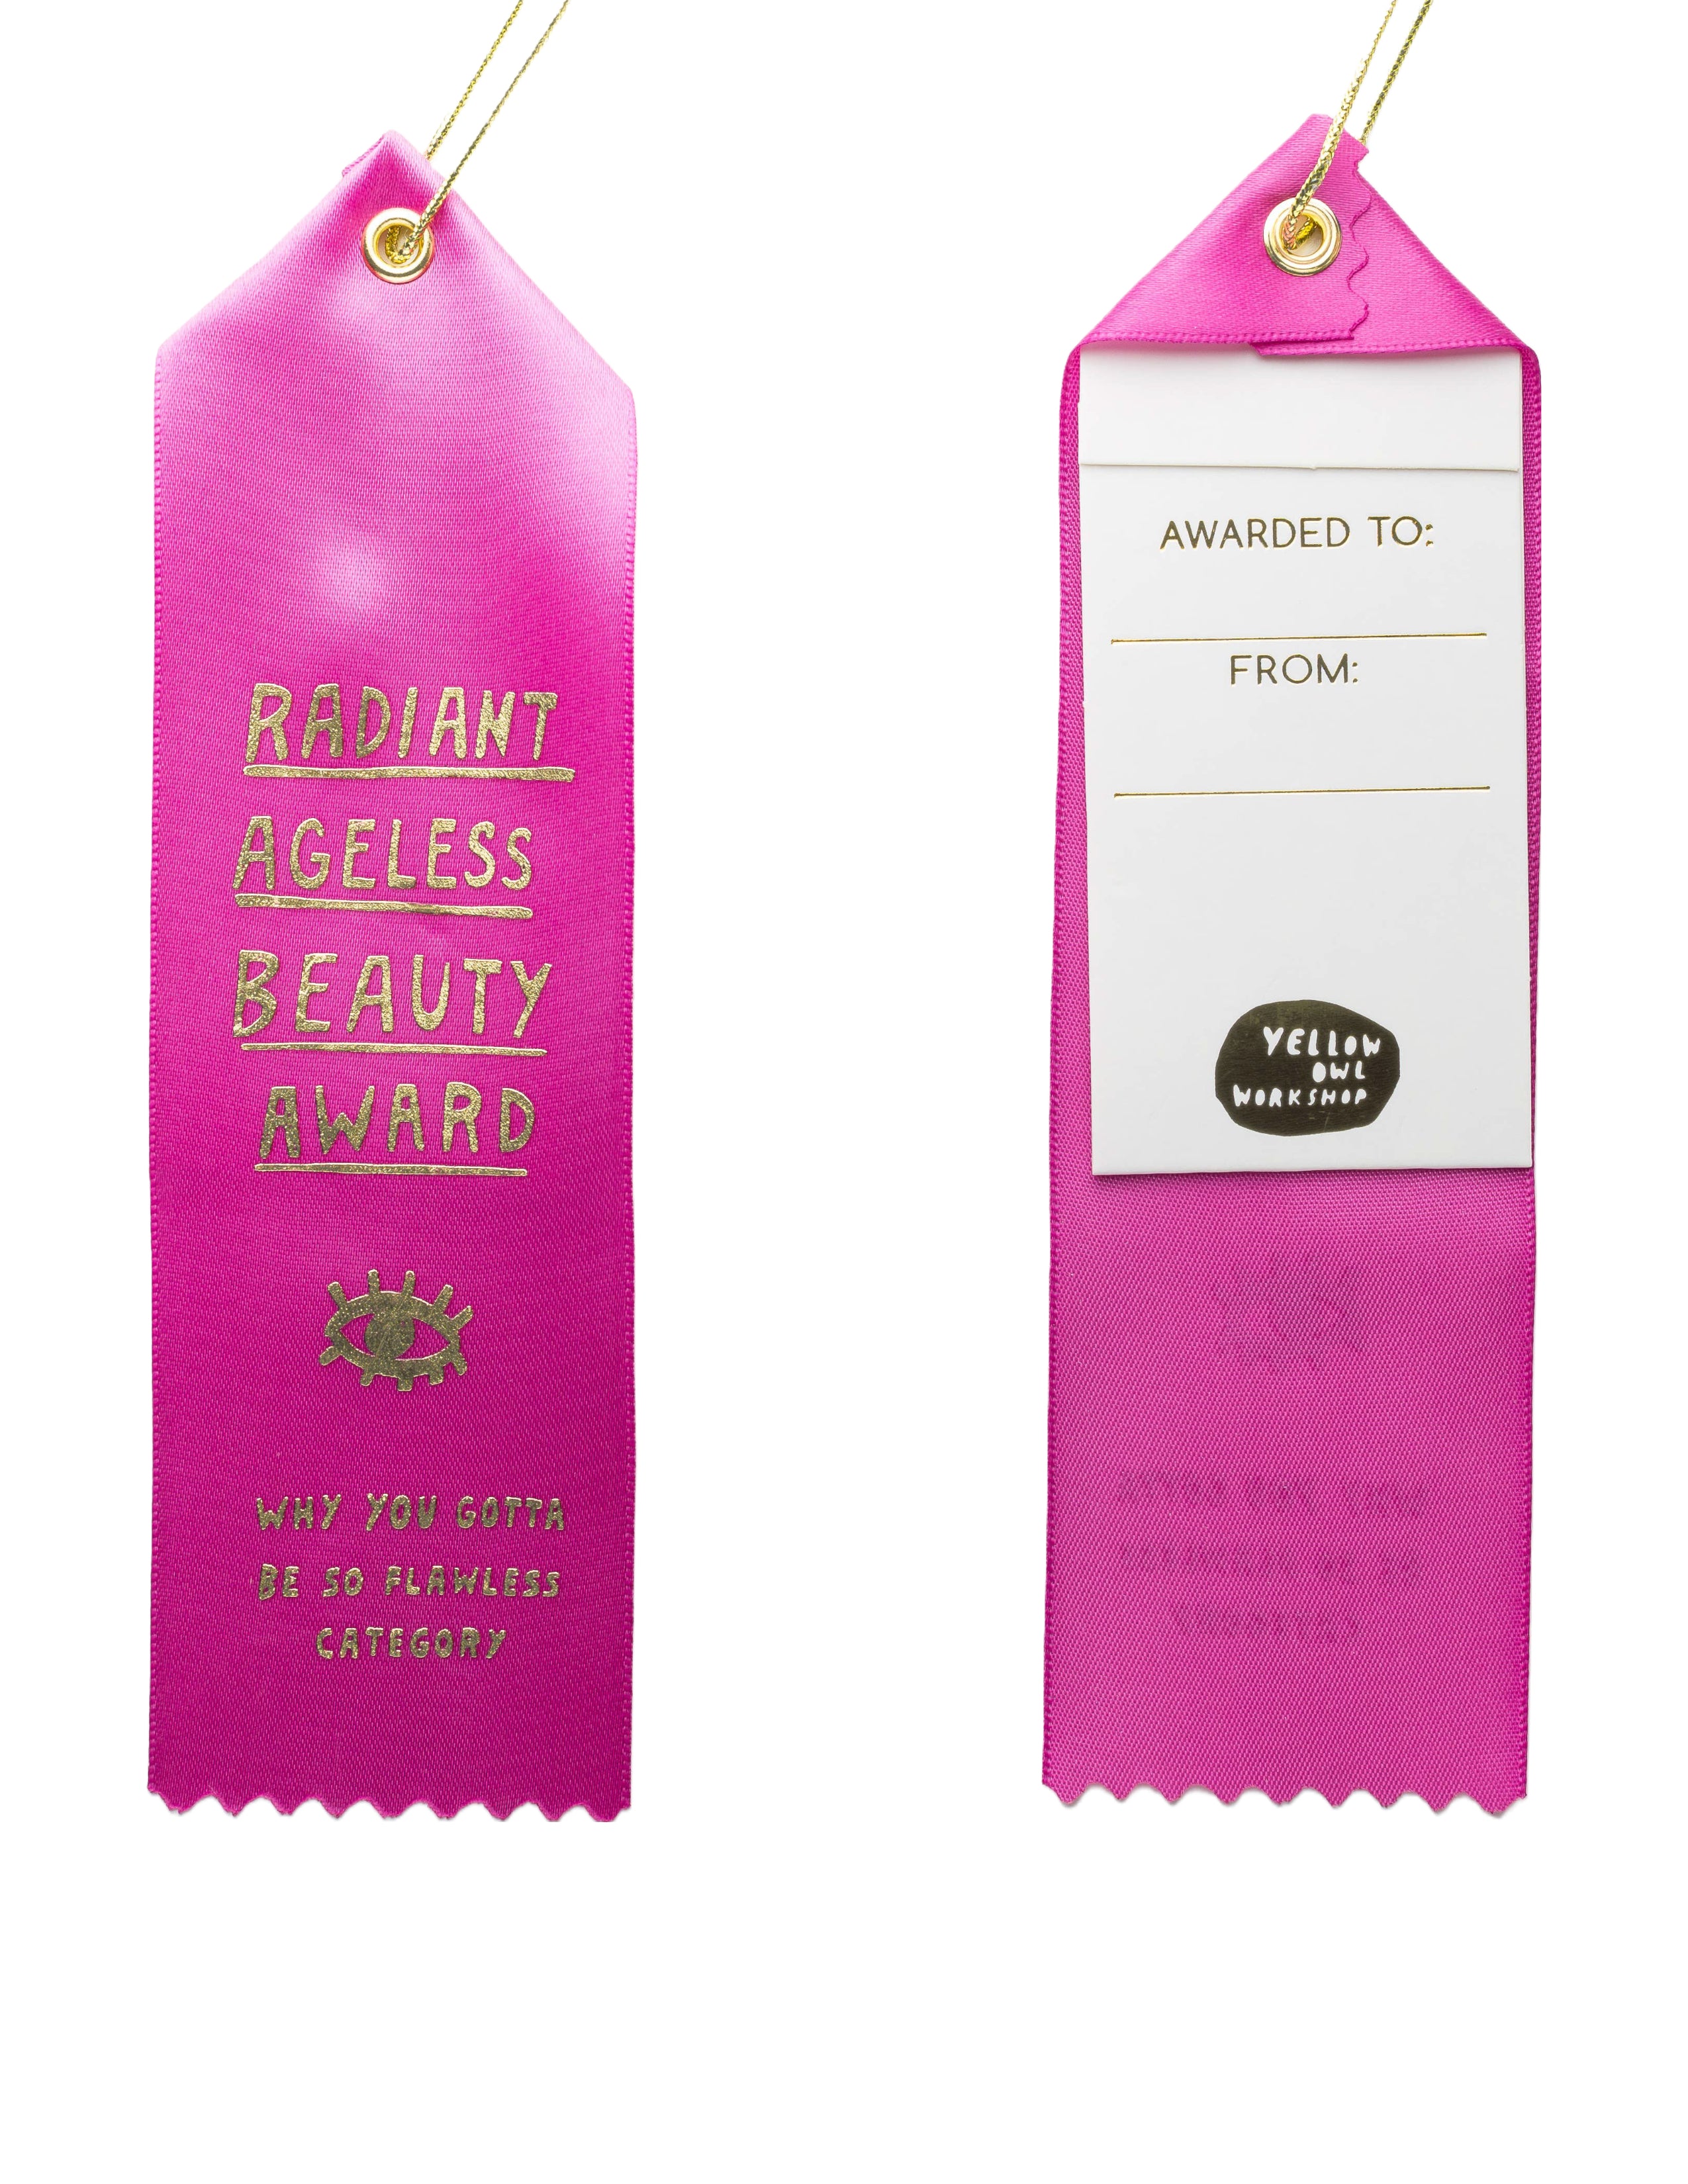 Radiant Ageless Beauty Award Ribbon